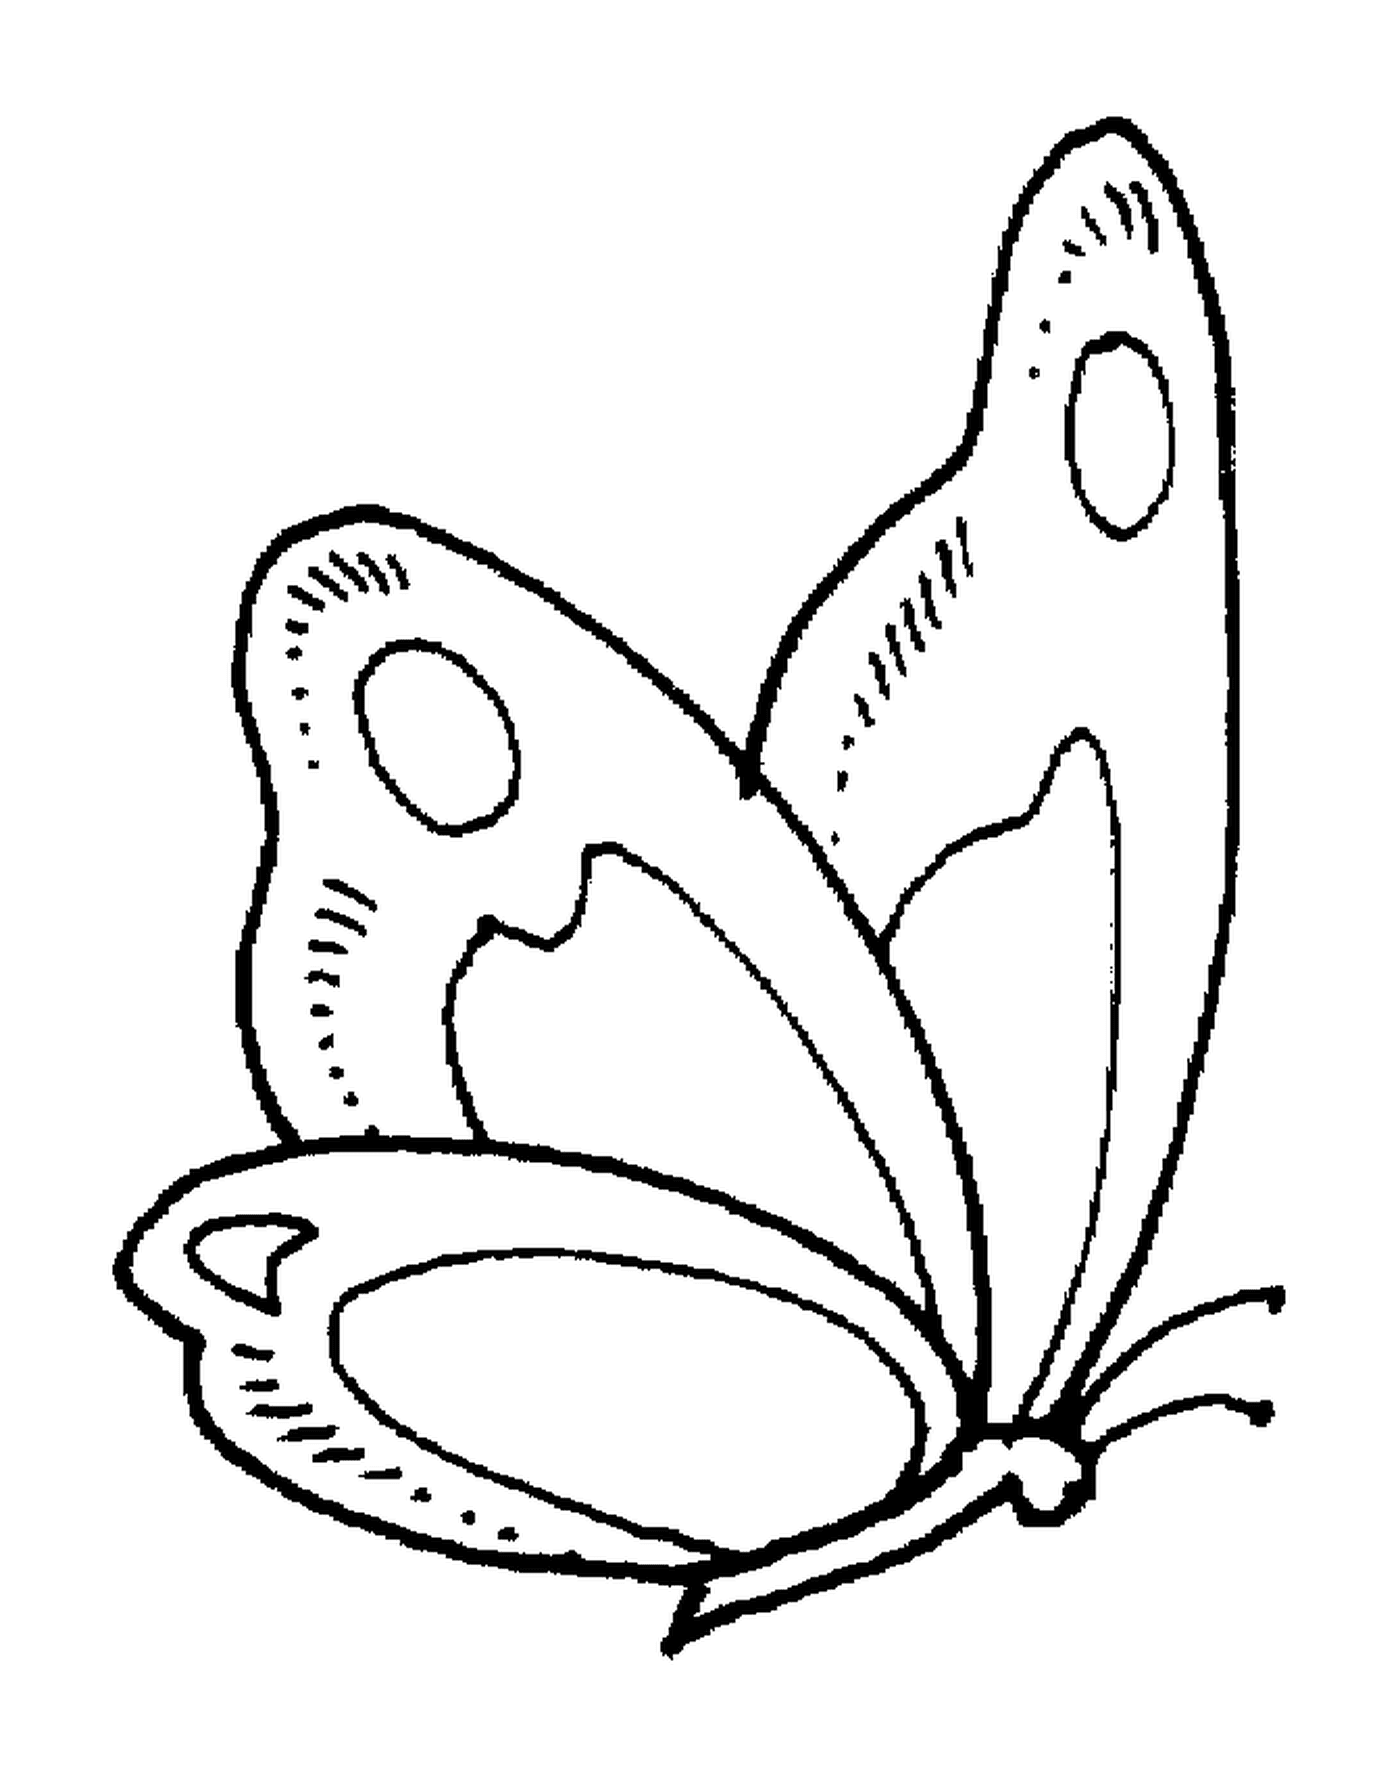  Farfalla con delicate ali 